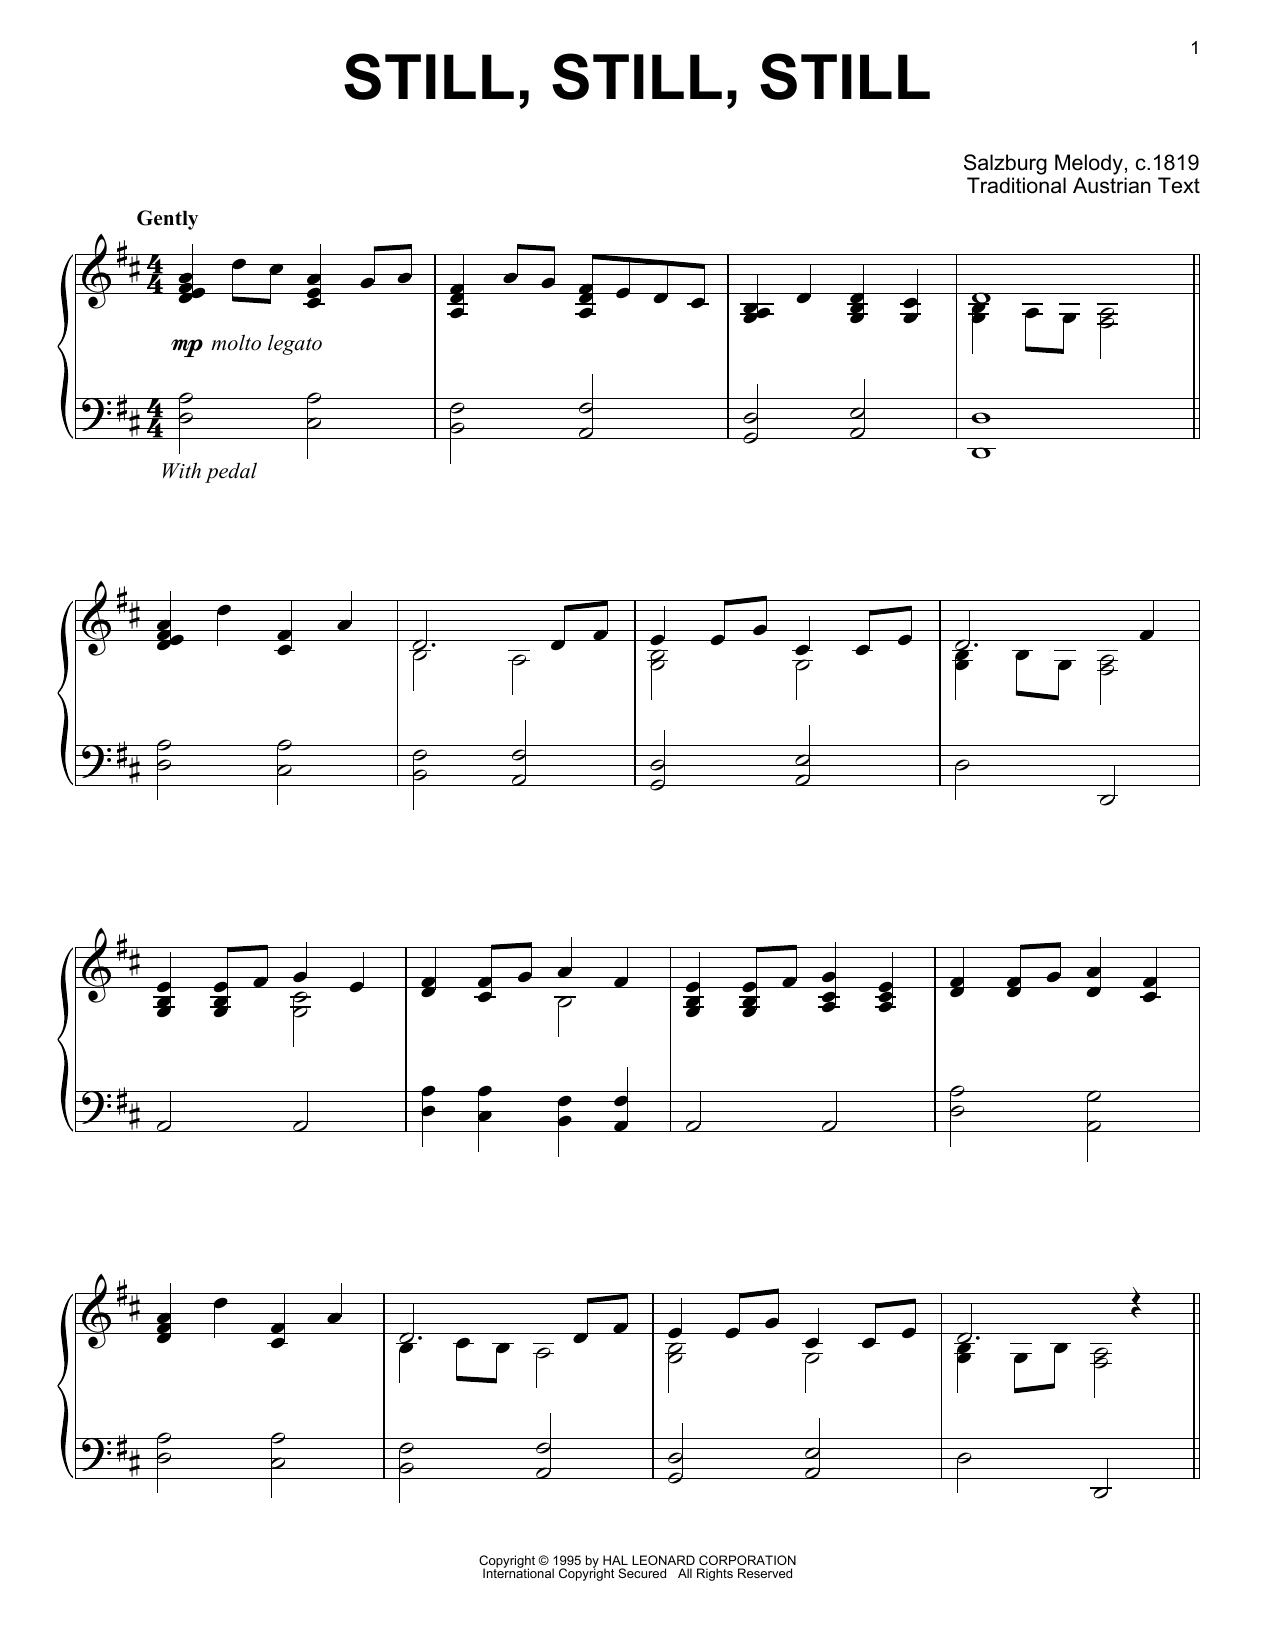 Traditional Austrian Text Still, Still, Still Sheet Music Notes & Chords for Violin - Download or Print PDF